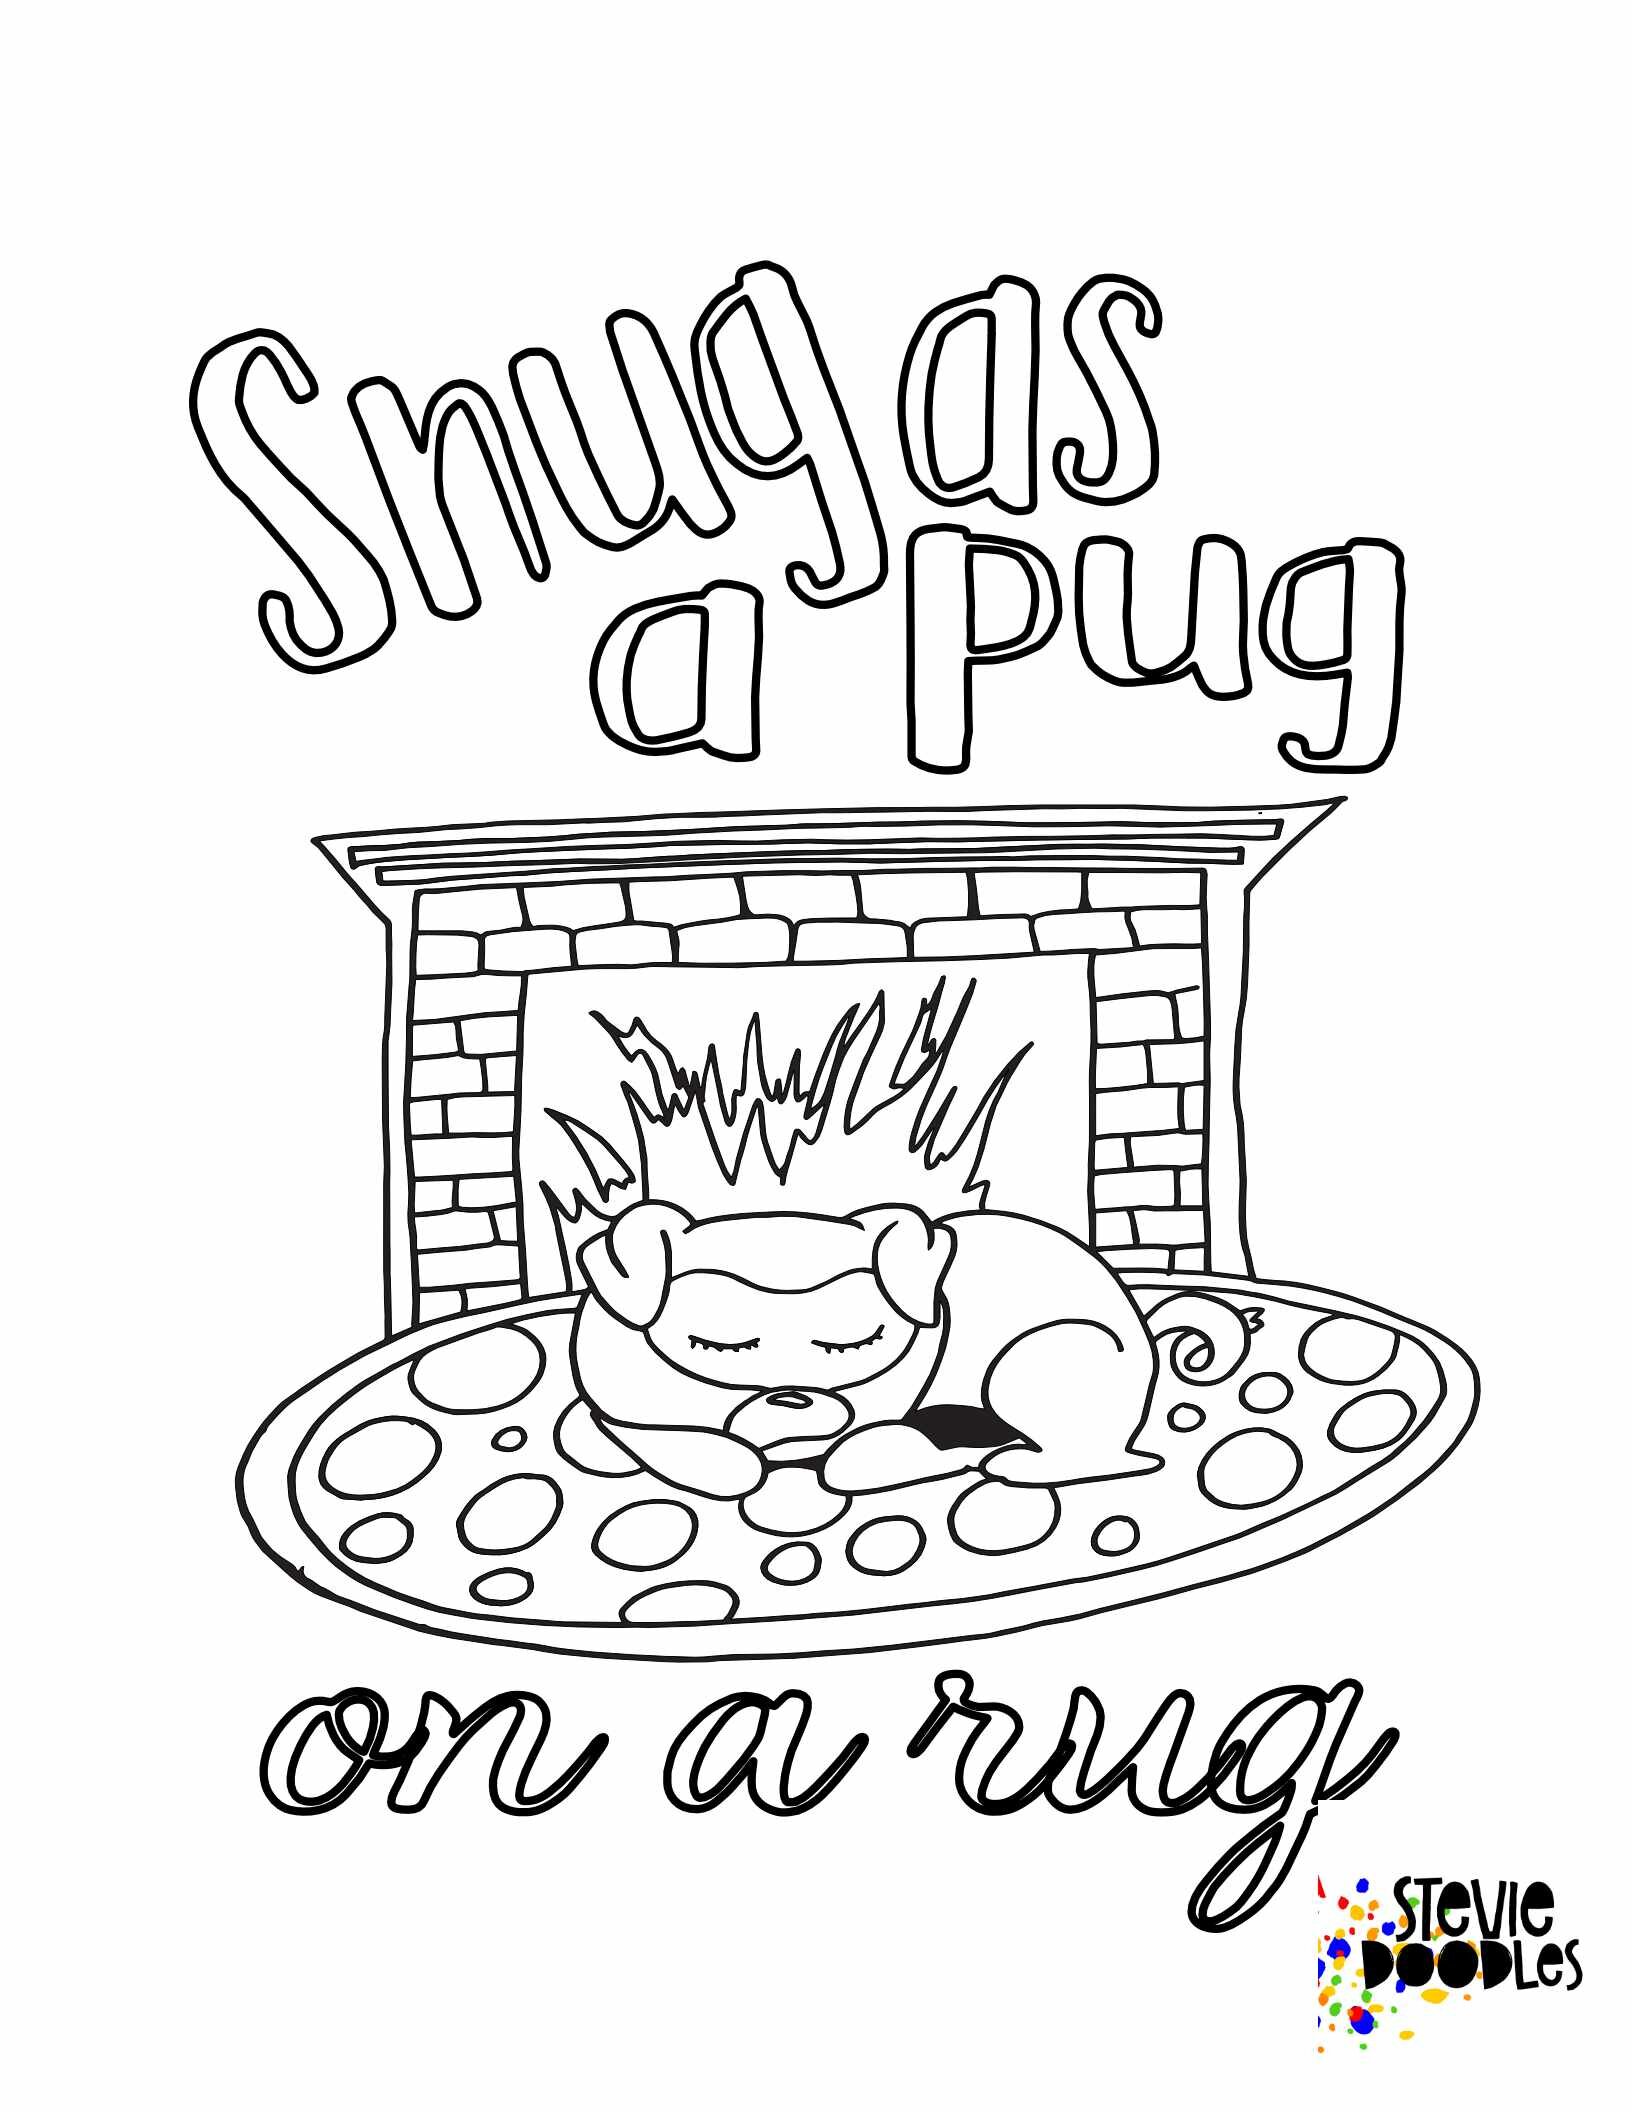 Snug As A Pug on a Rug - Free Printable Coloring Page Over 1000 free printable coloring pages